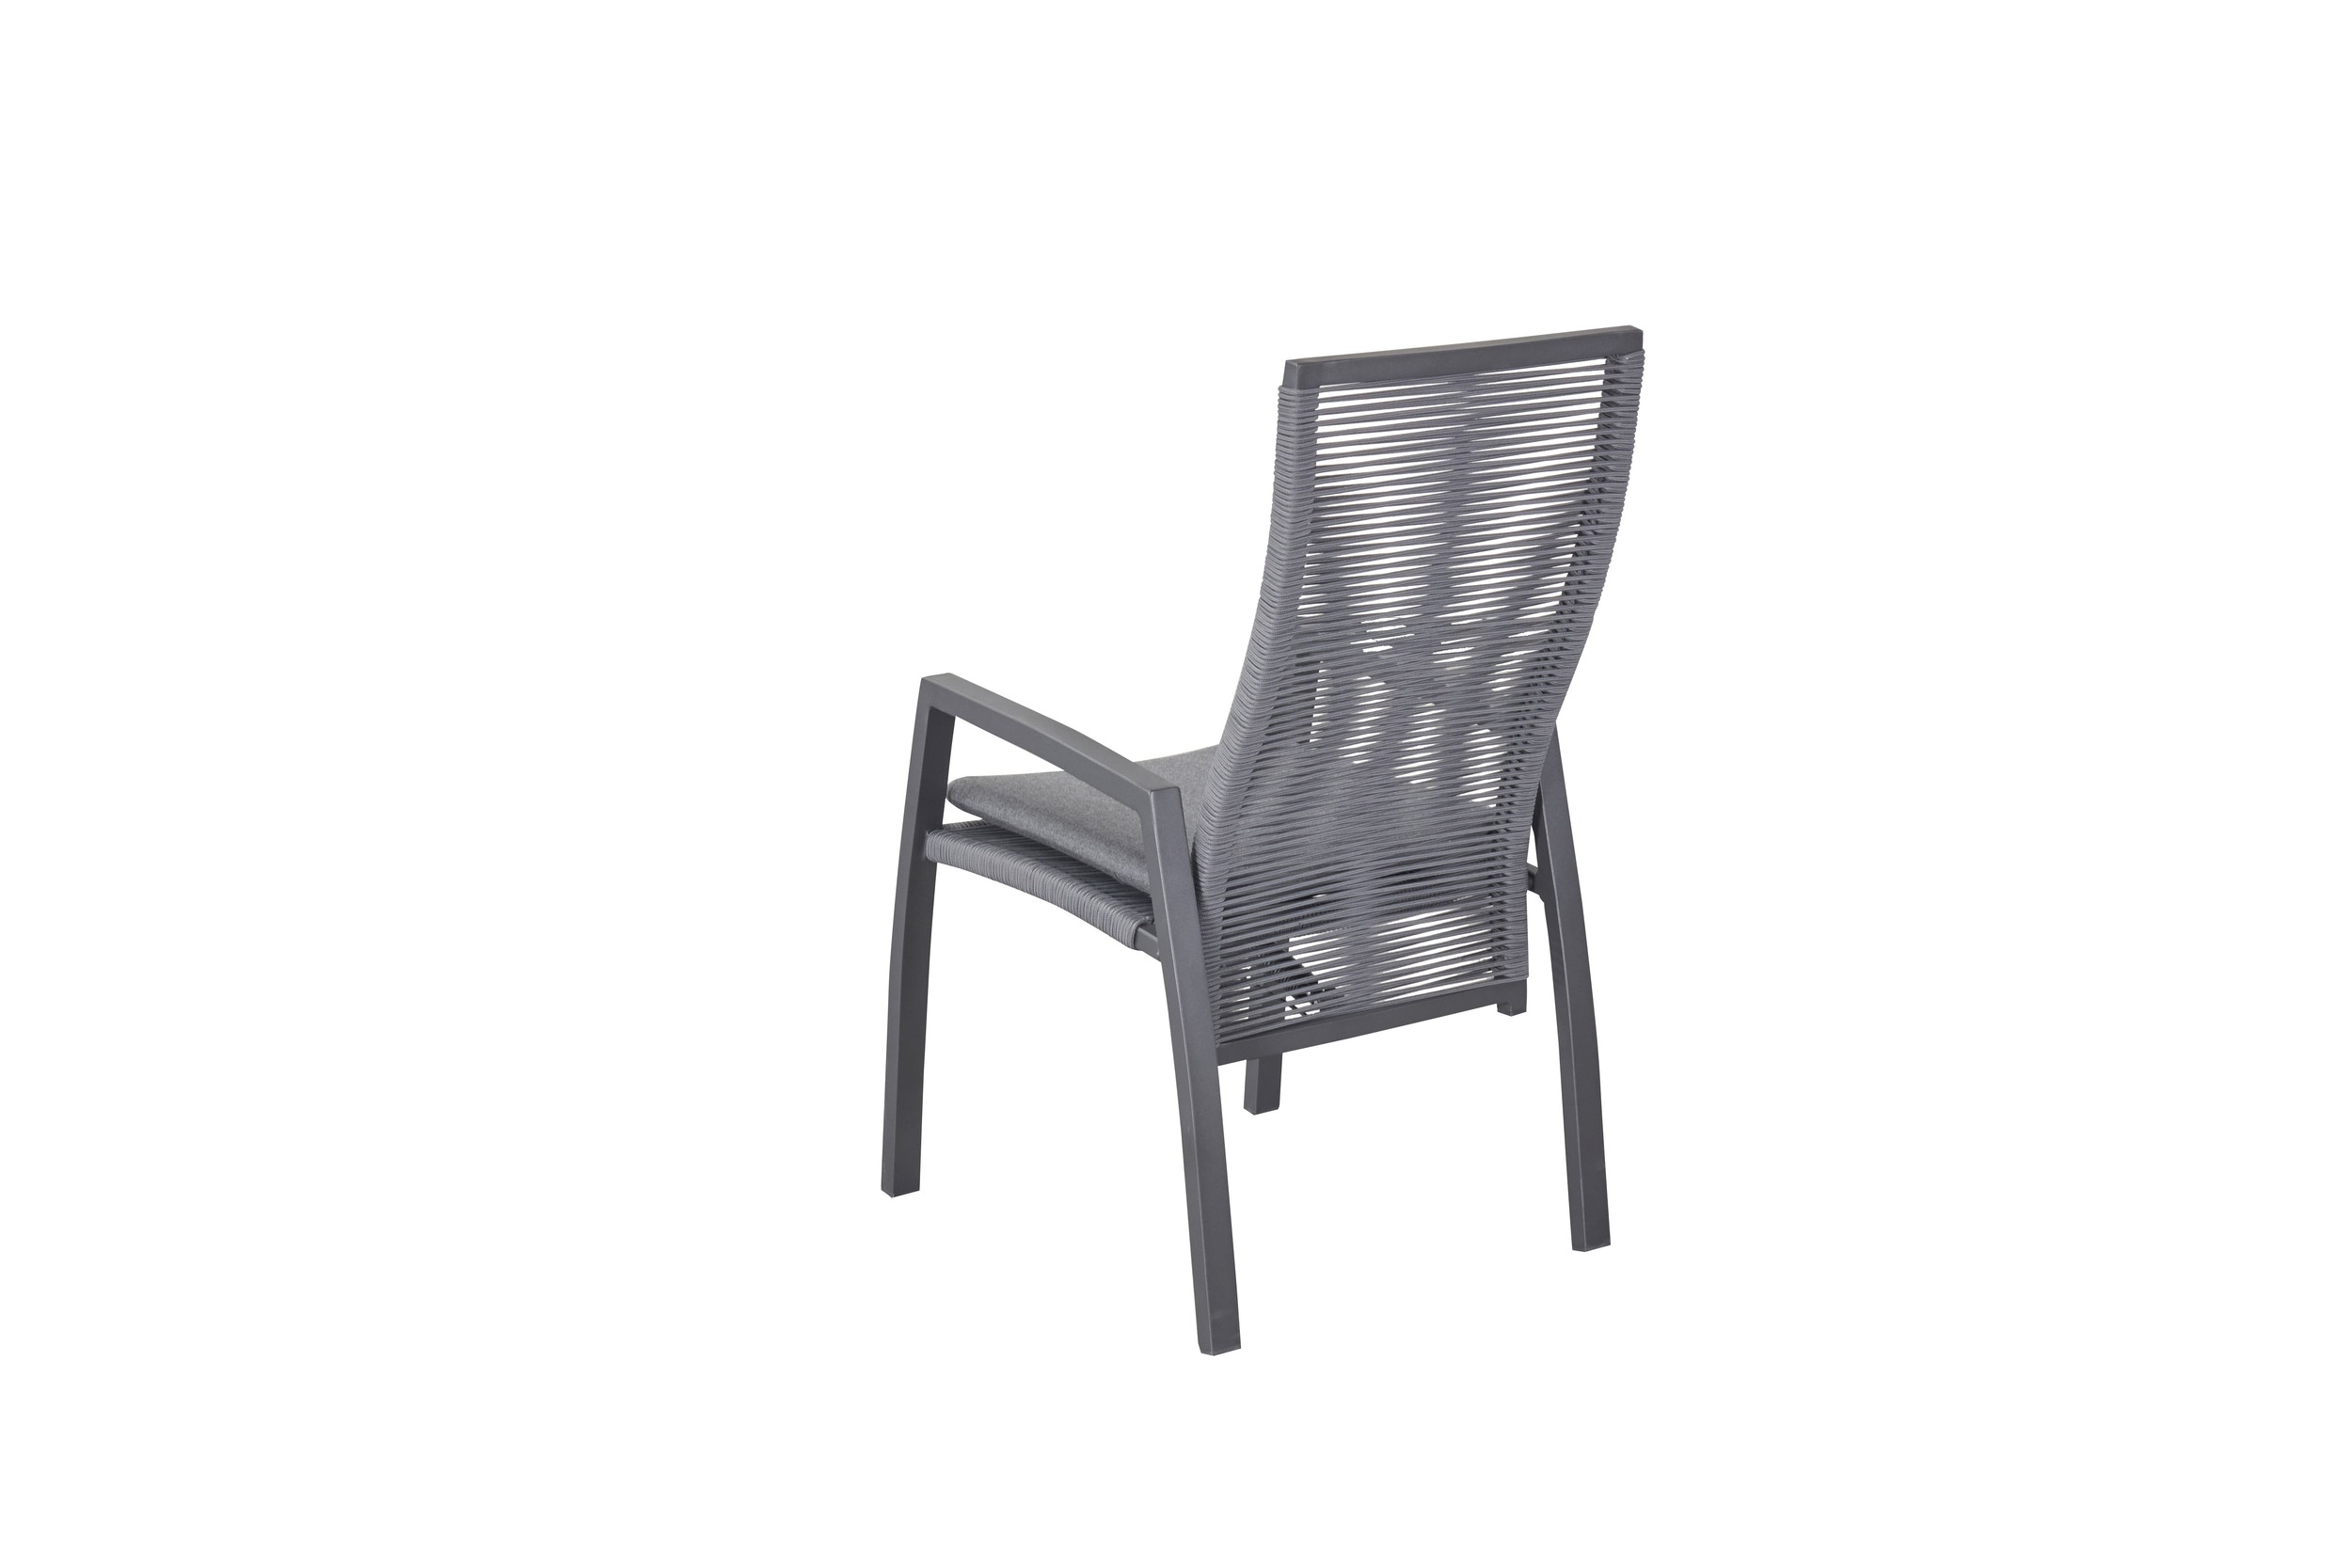 LC Garden 2er Set »Diwo« Gartenstuhl anthrazit/grau Aluminium/Rope Positionsstuhl mit Sitzkissen aus Sunbrella® Stoff